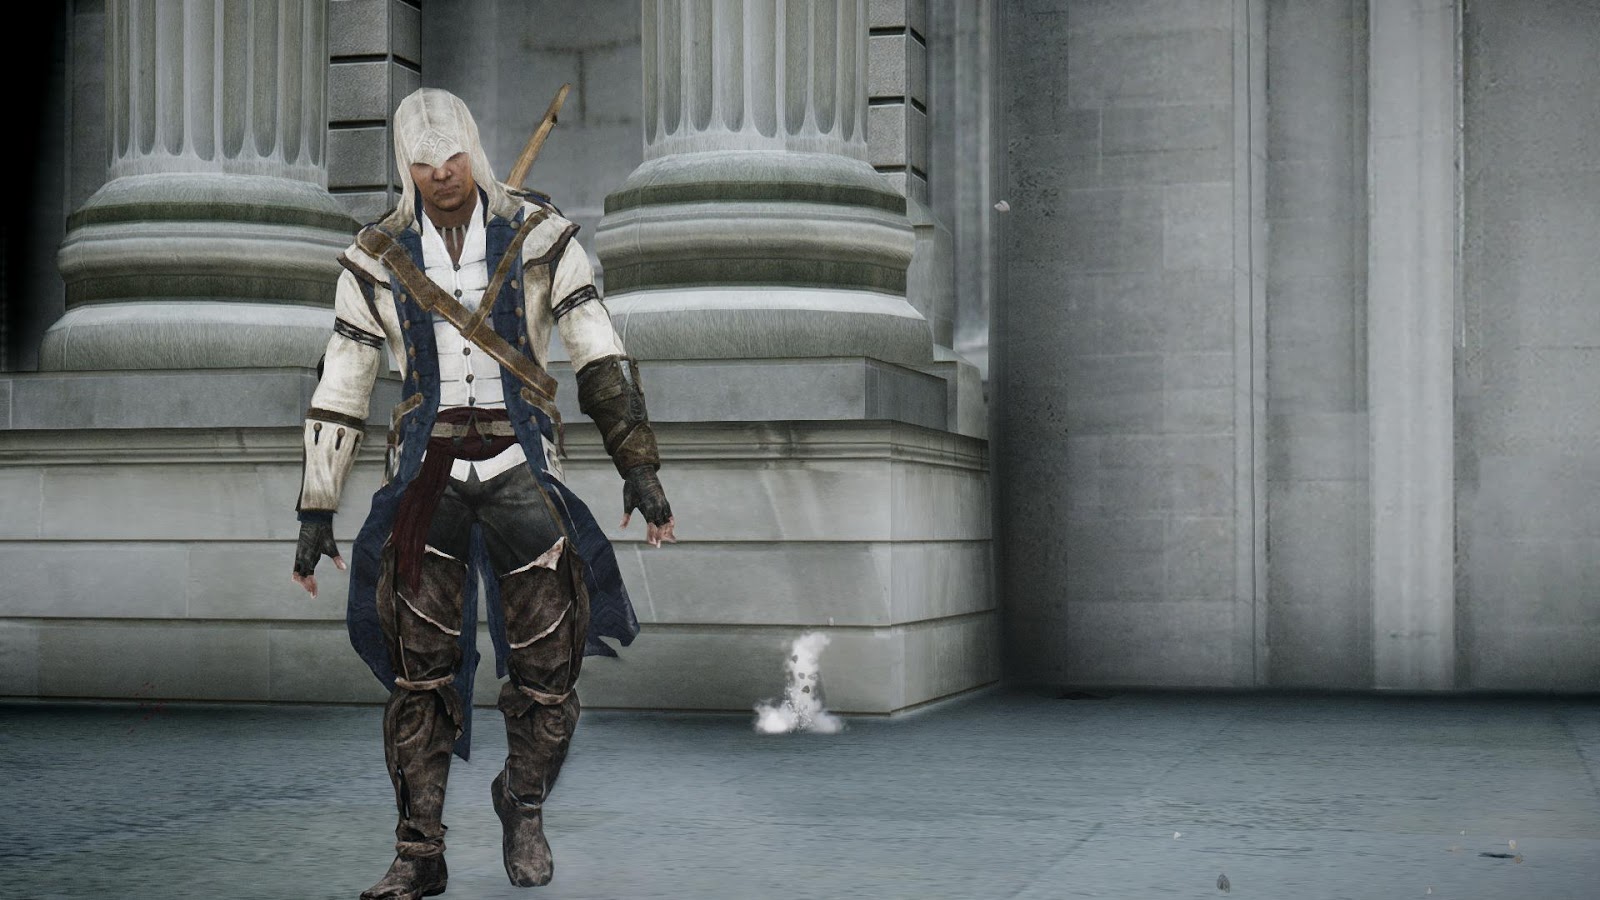 Assassins creed 3 mods. Костюм Коннора Кенуэя. Коннор ассасин Крид. Connor из Assassin's Creed 3. Assassins Creed 3 скины.